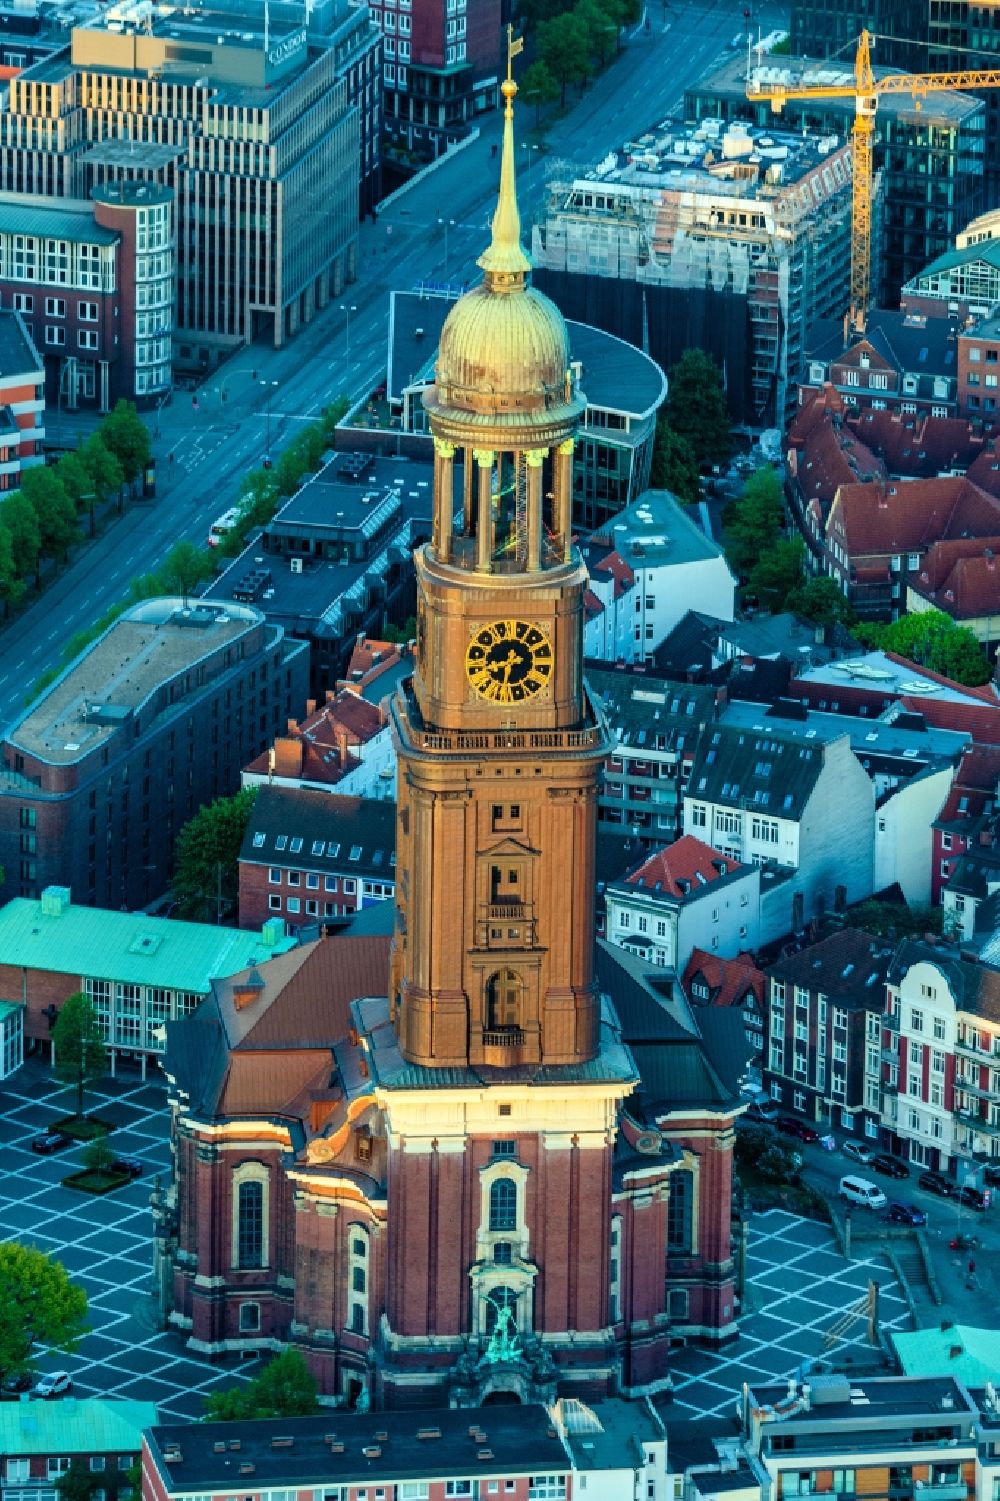 Hamburg from the bird's eye view: View of the church St. Michaelis in Hamburg